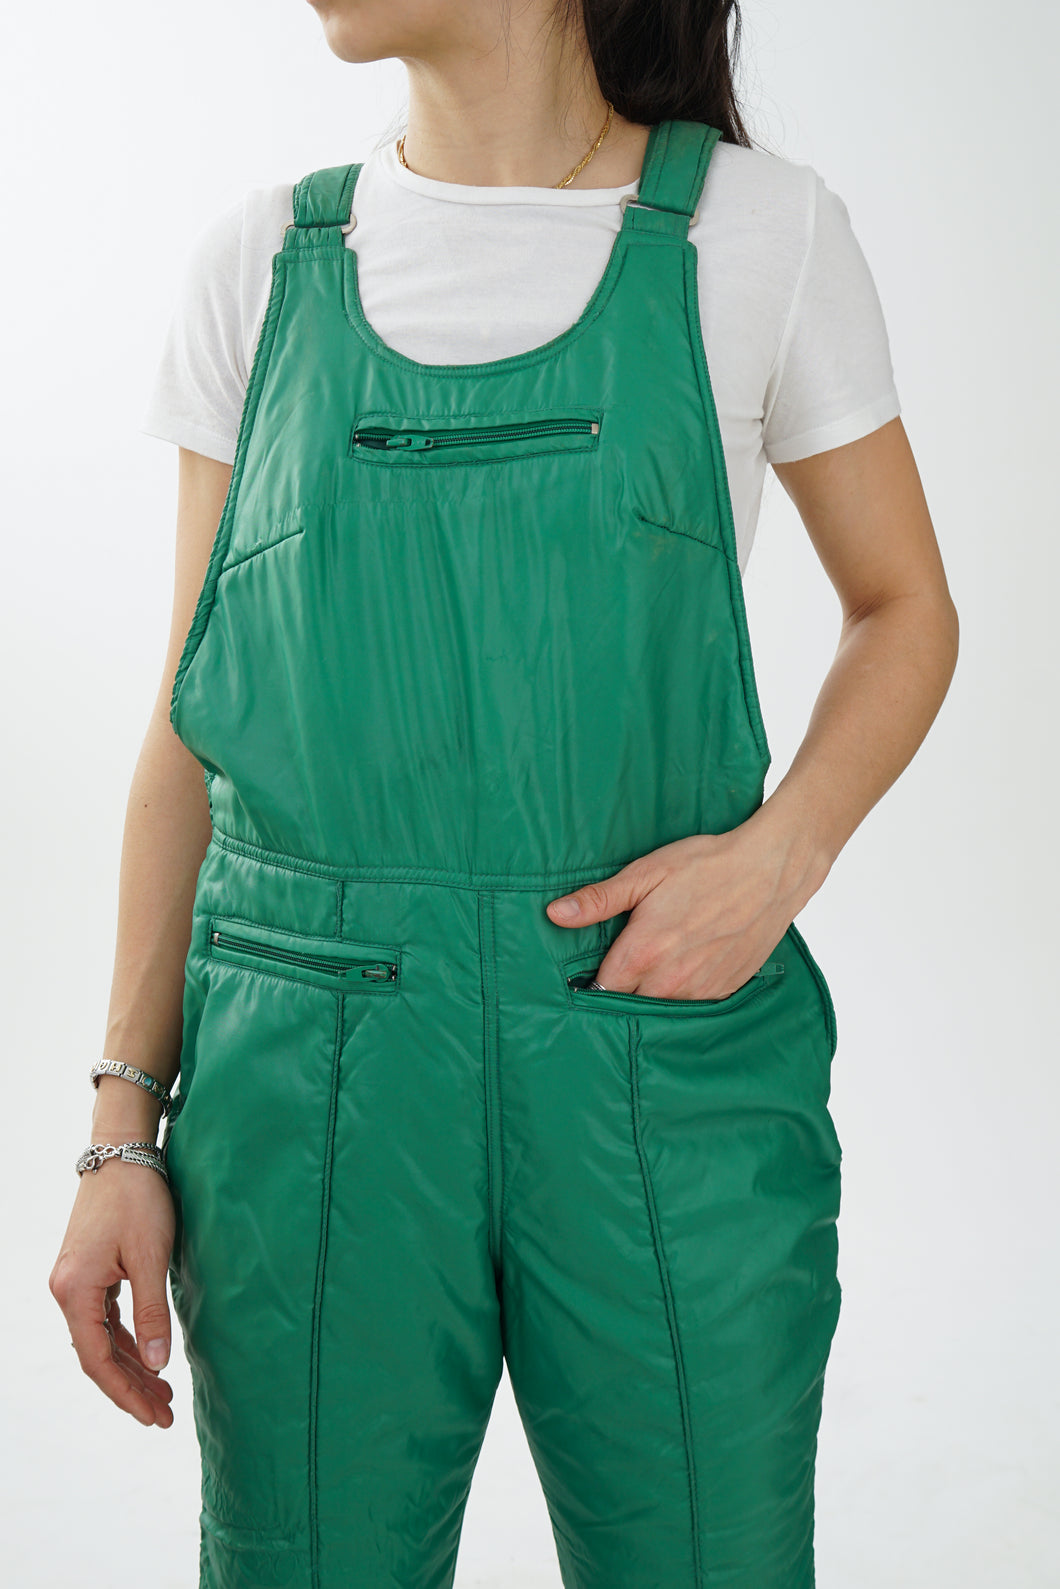 Pantalon de neige salopette vintage Americana vert pour femme taille 16 (L)